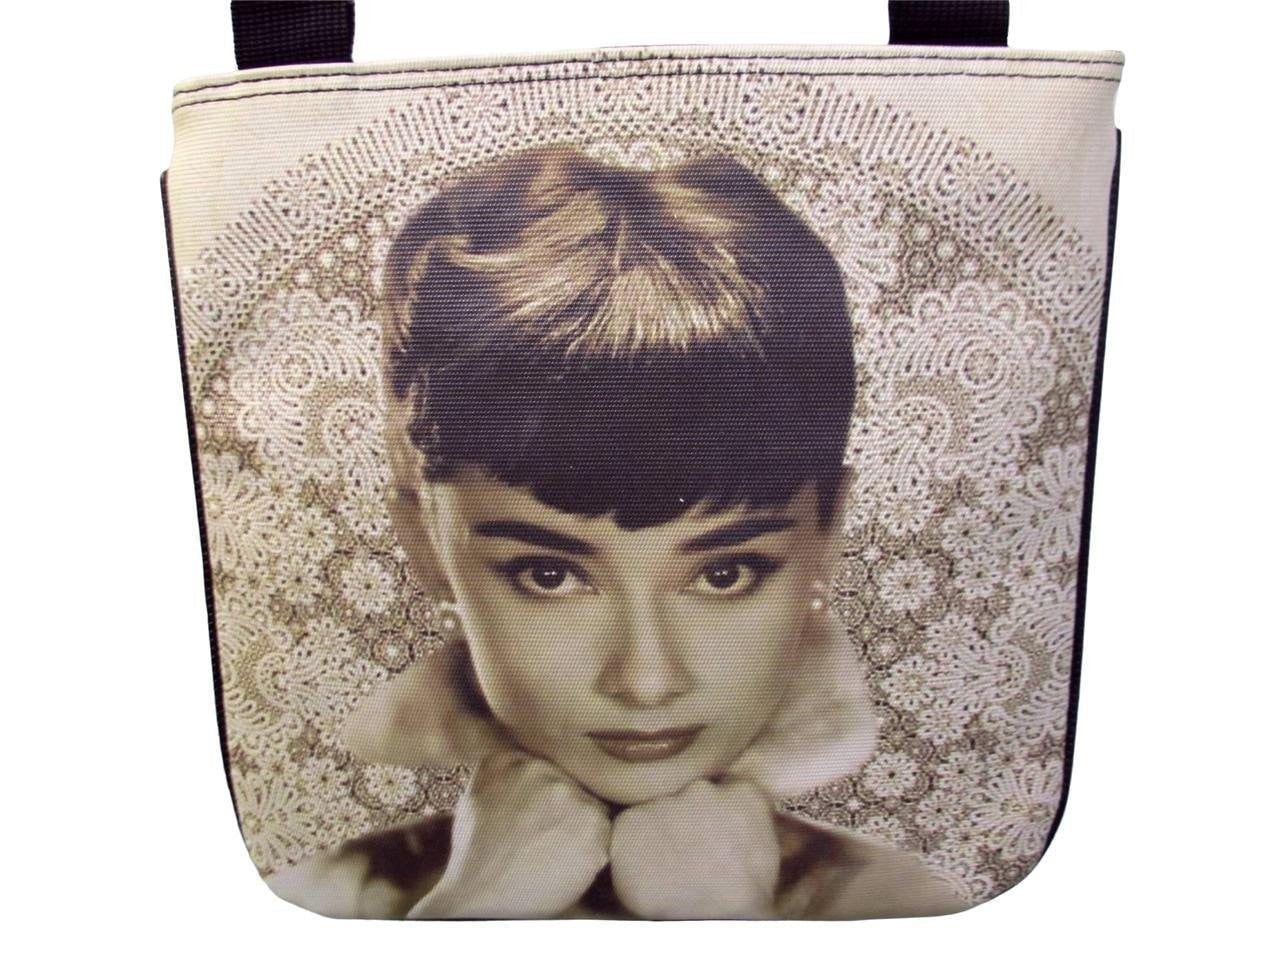 Audrey Hepburn Bags 